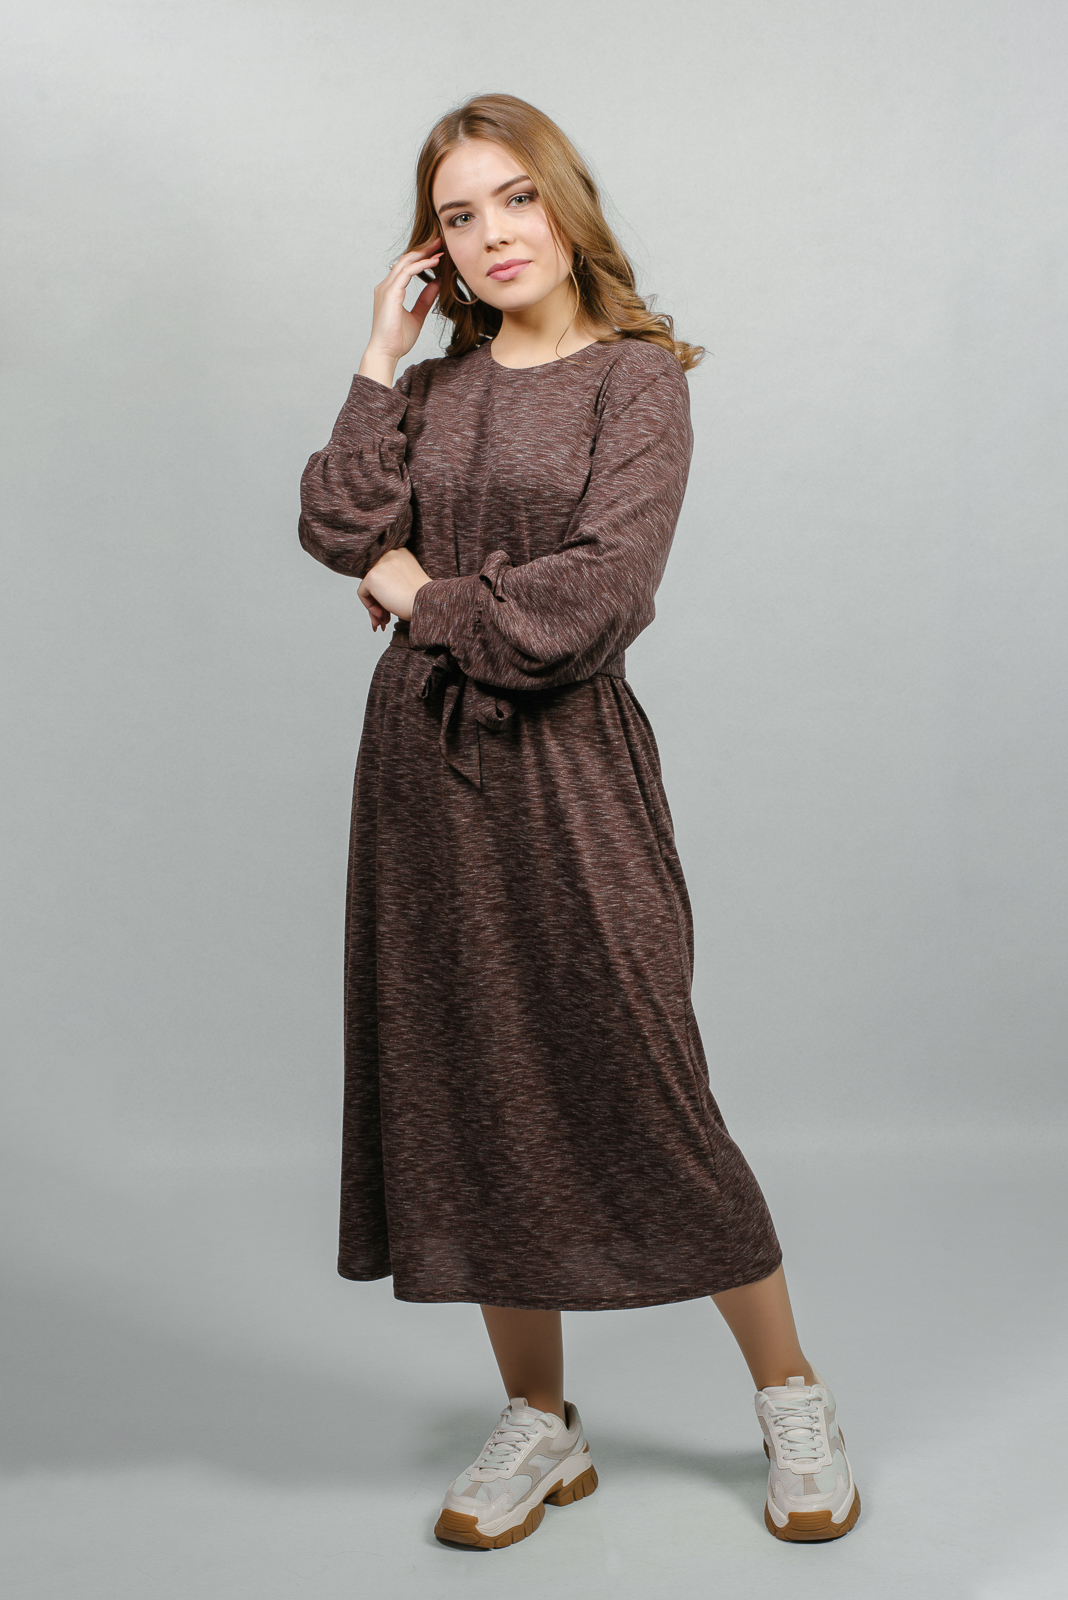 Платье женское Mila Bezgerts 2938АП коричневое 54 RU